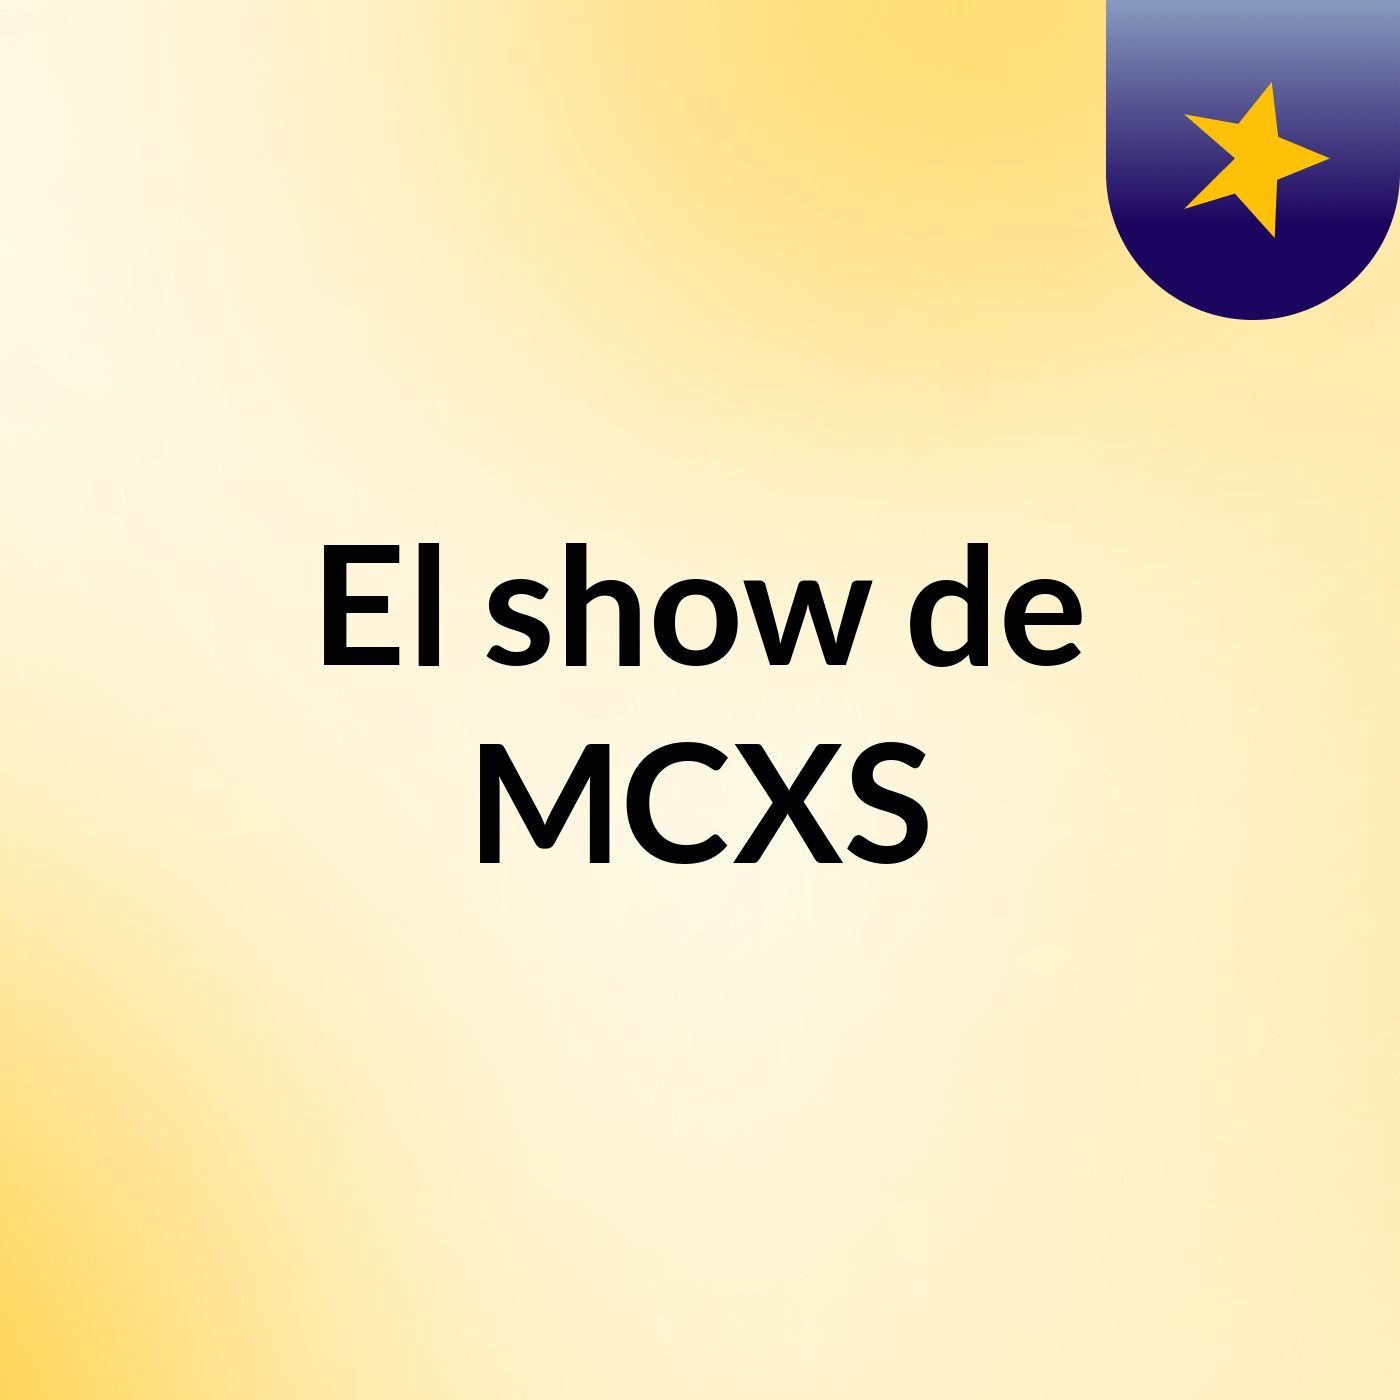 El show de MCXS